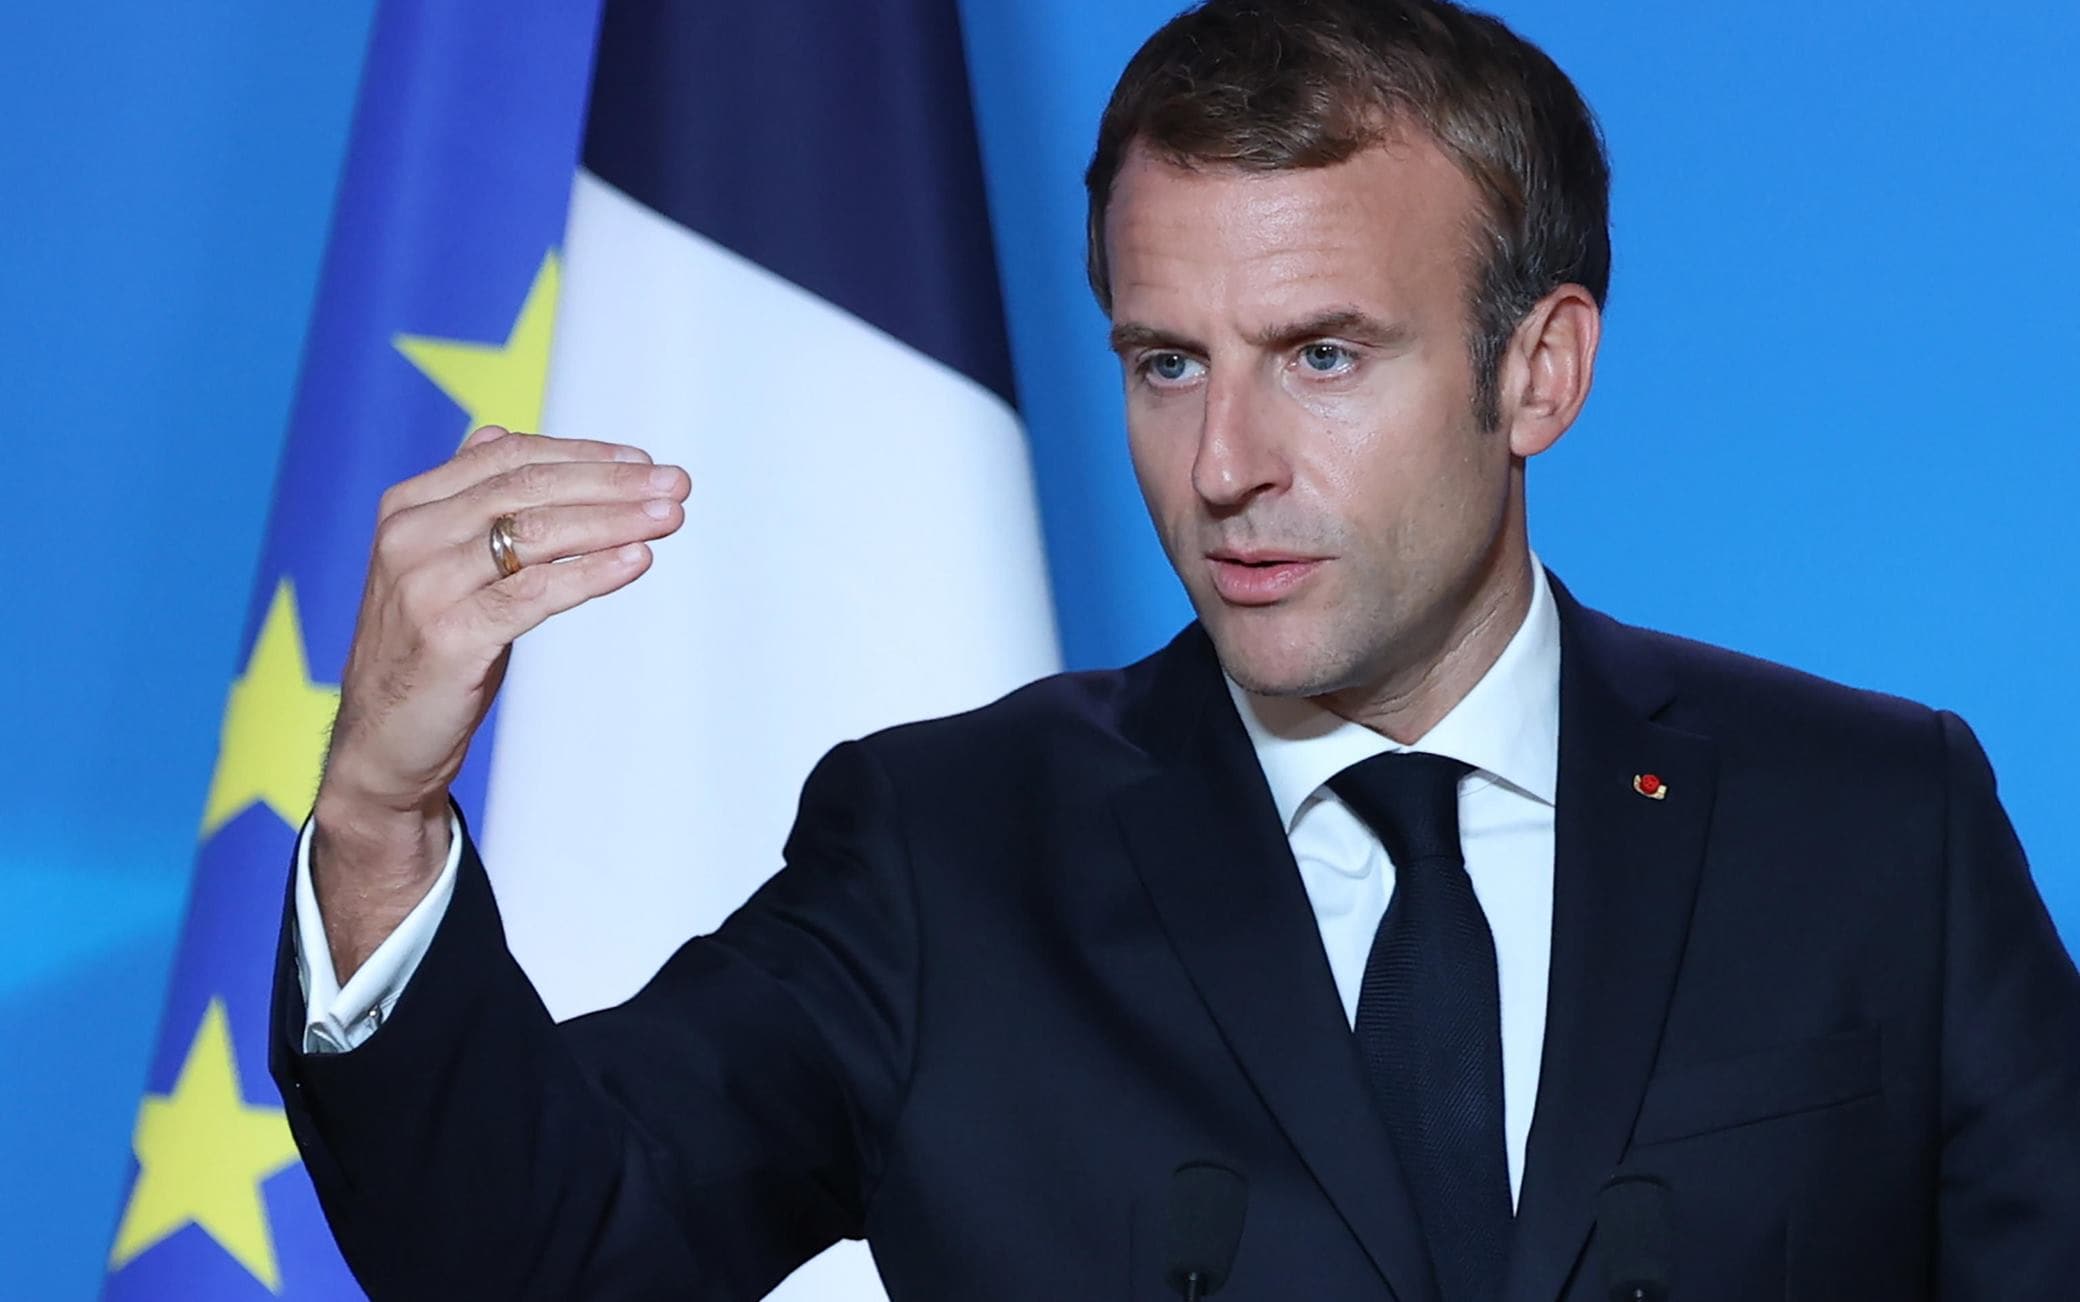 Emmanuel Macron au G20 Rome 2021 : portrait du président français